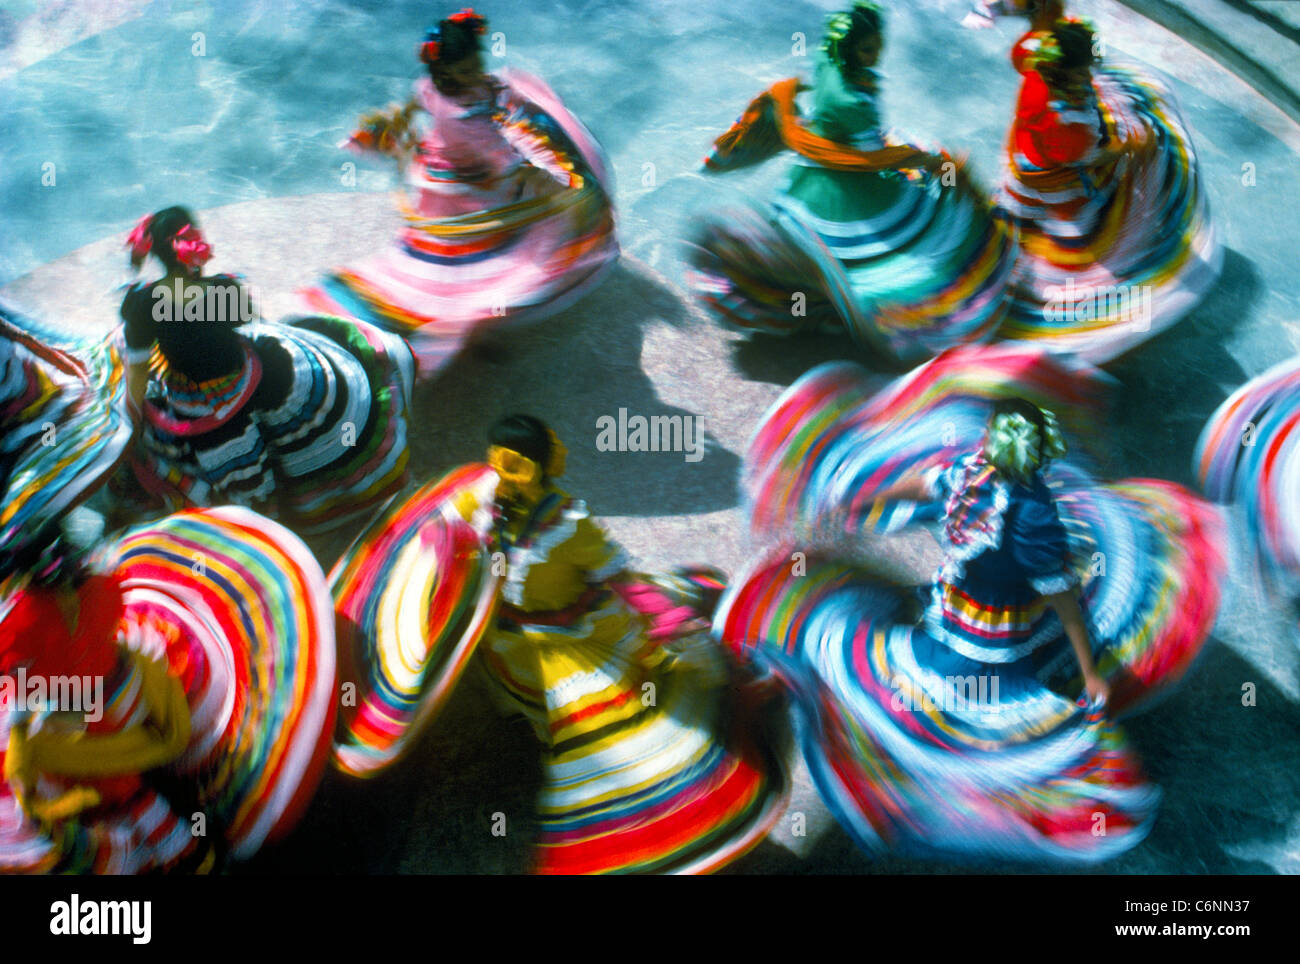 Eine Draufsicht zeigt die bunten traditionellen Kleider der wirbelnden folkloristischer Tänzern, die oft Touristen in Mexiko, Nordamerika unterhalten. Stockfoto